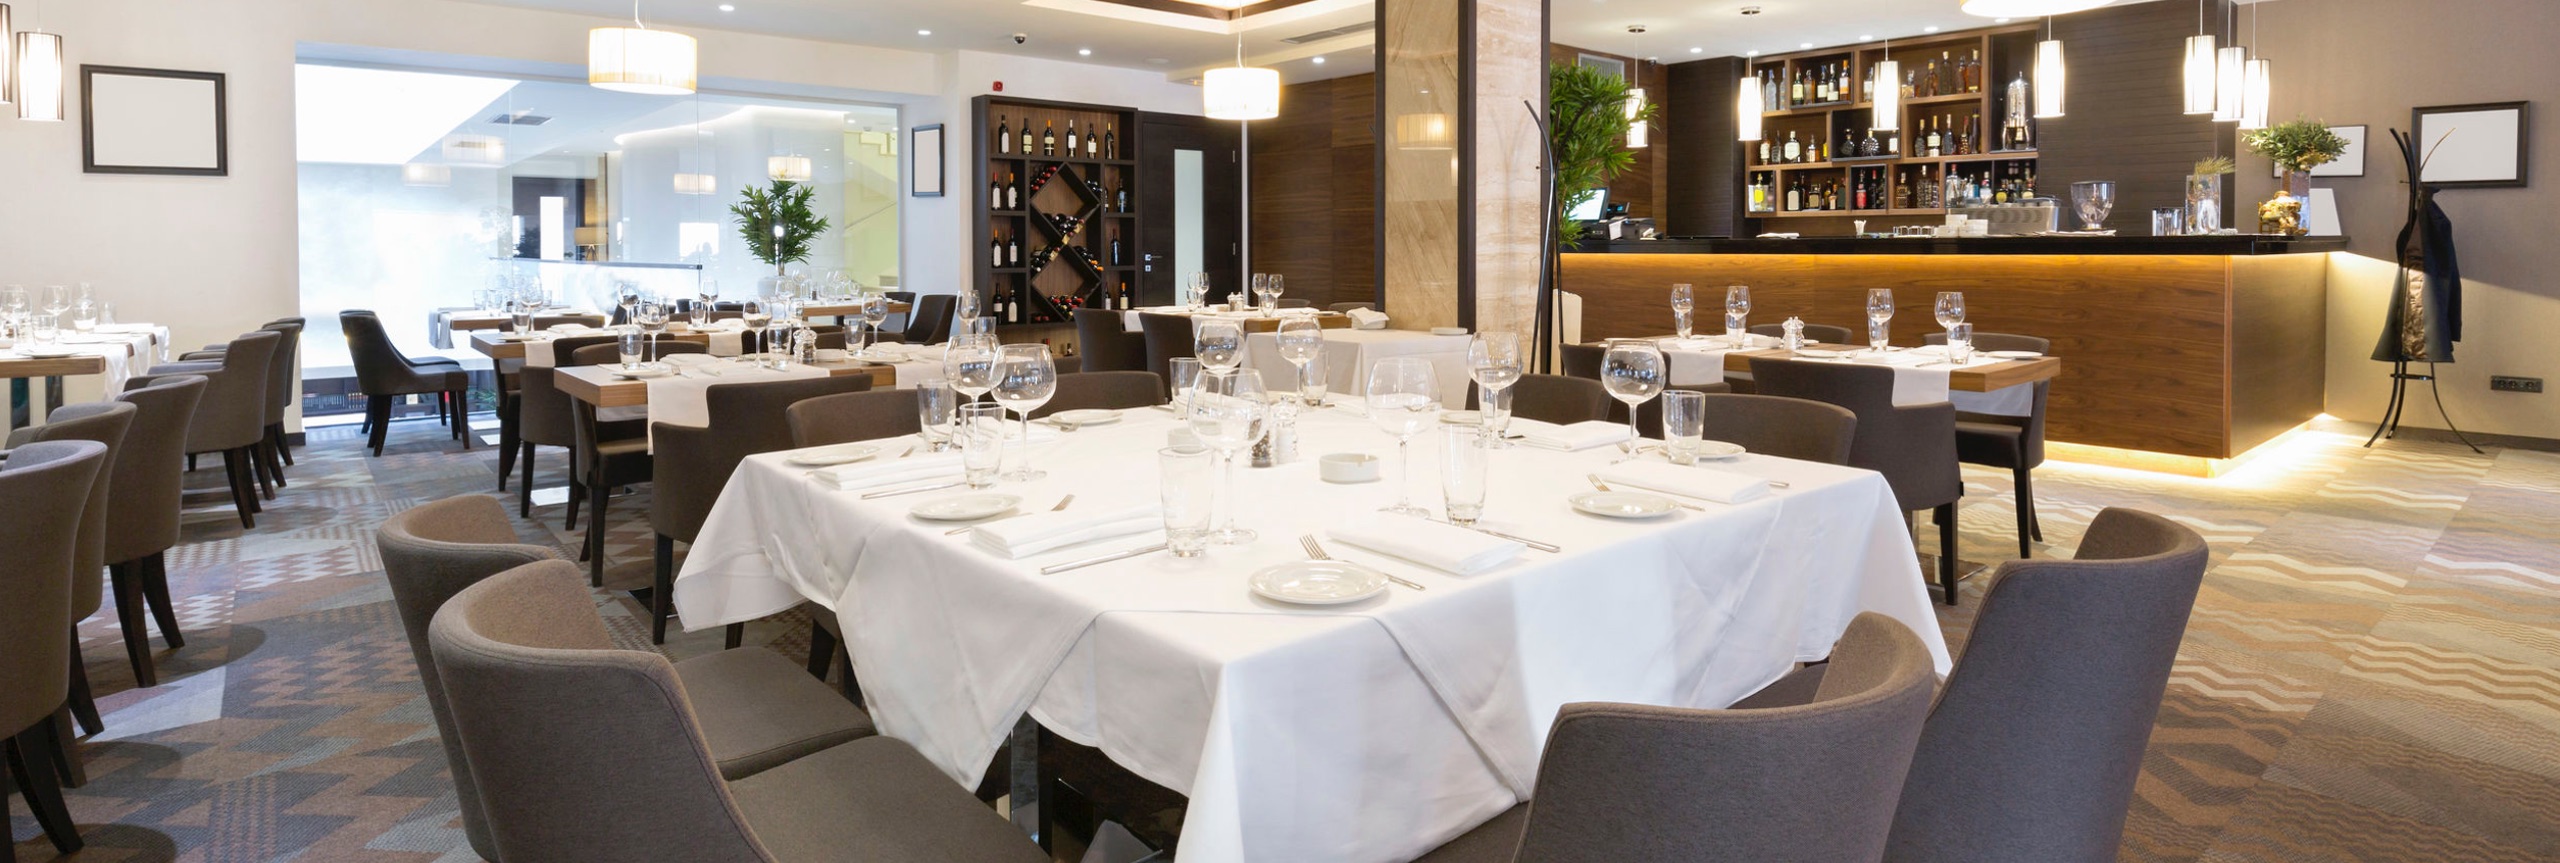 restaurant met bedekte tafels, grijze stoelen en een bar